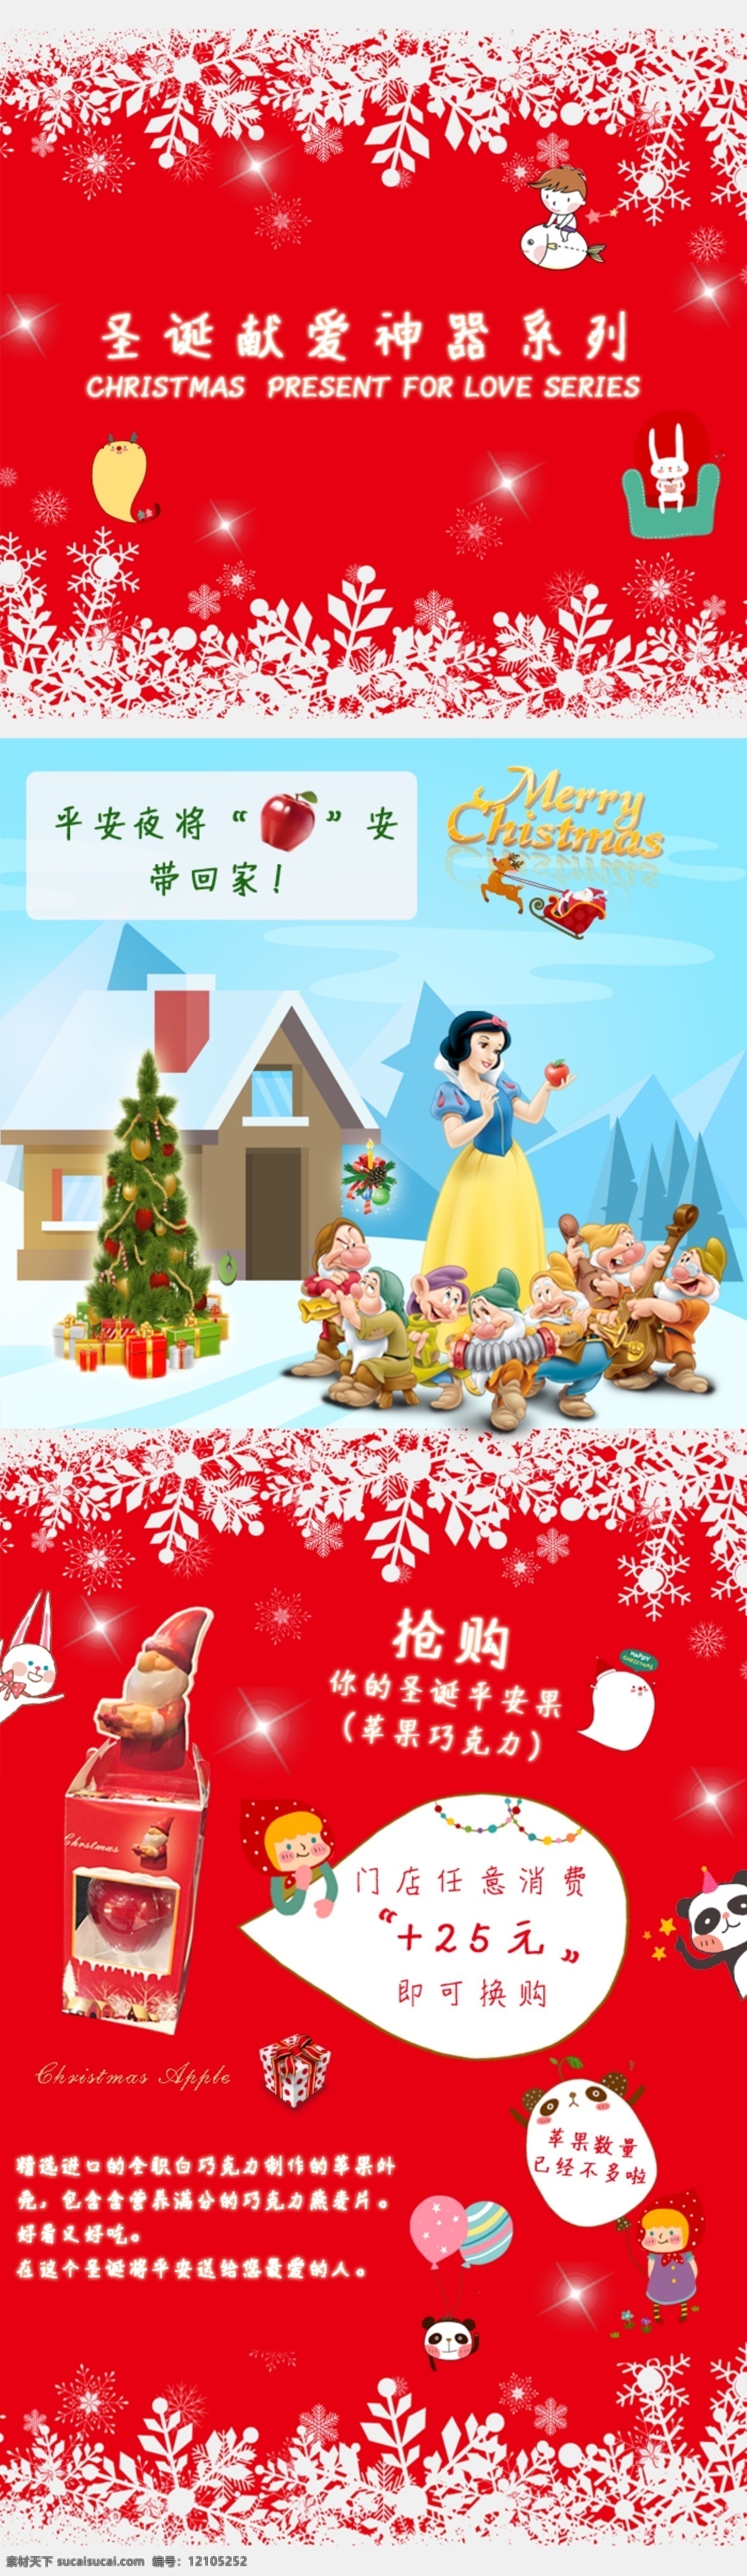 圣诞 苹果 微 信 gif 内页 微信 微信内页 圣诞苹果 动图 动态页面 白雪公主 移动界面设计 手机界面